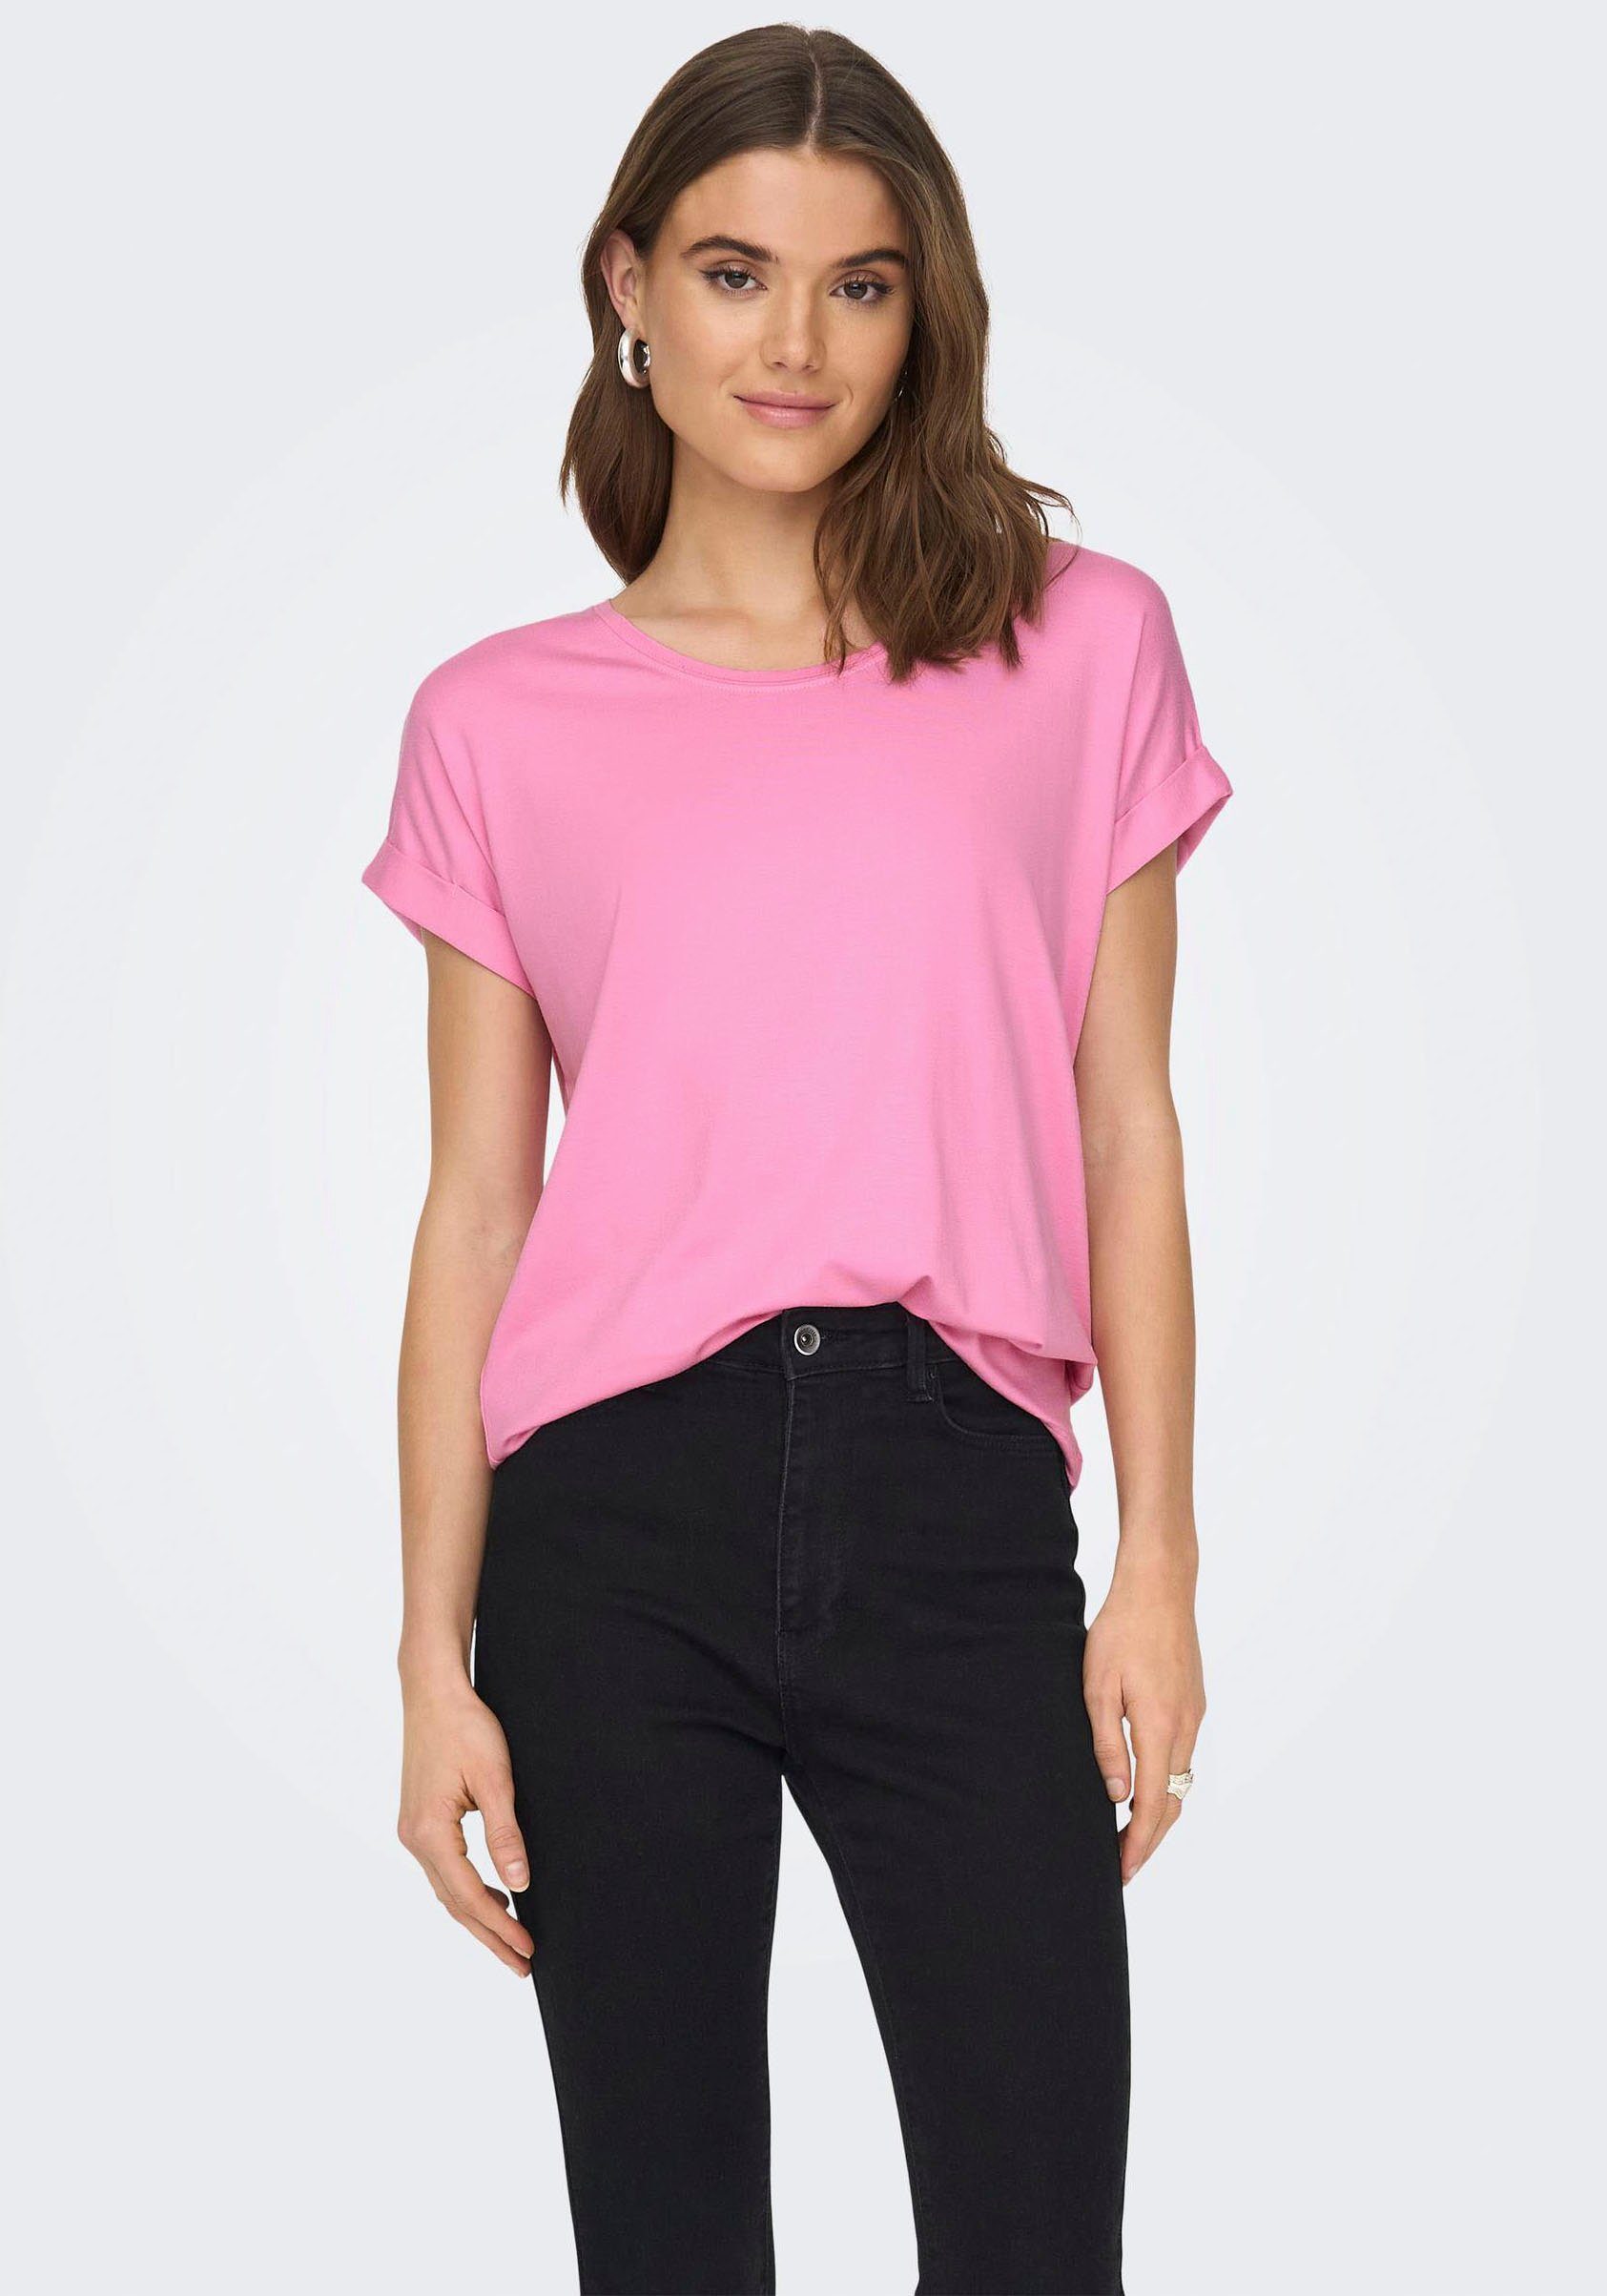 ONLMOSTER T-Shirt Arm am ONLY Begonia mit Pink Aufschlag